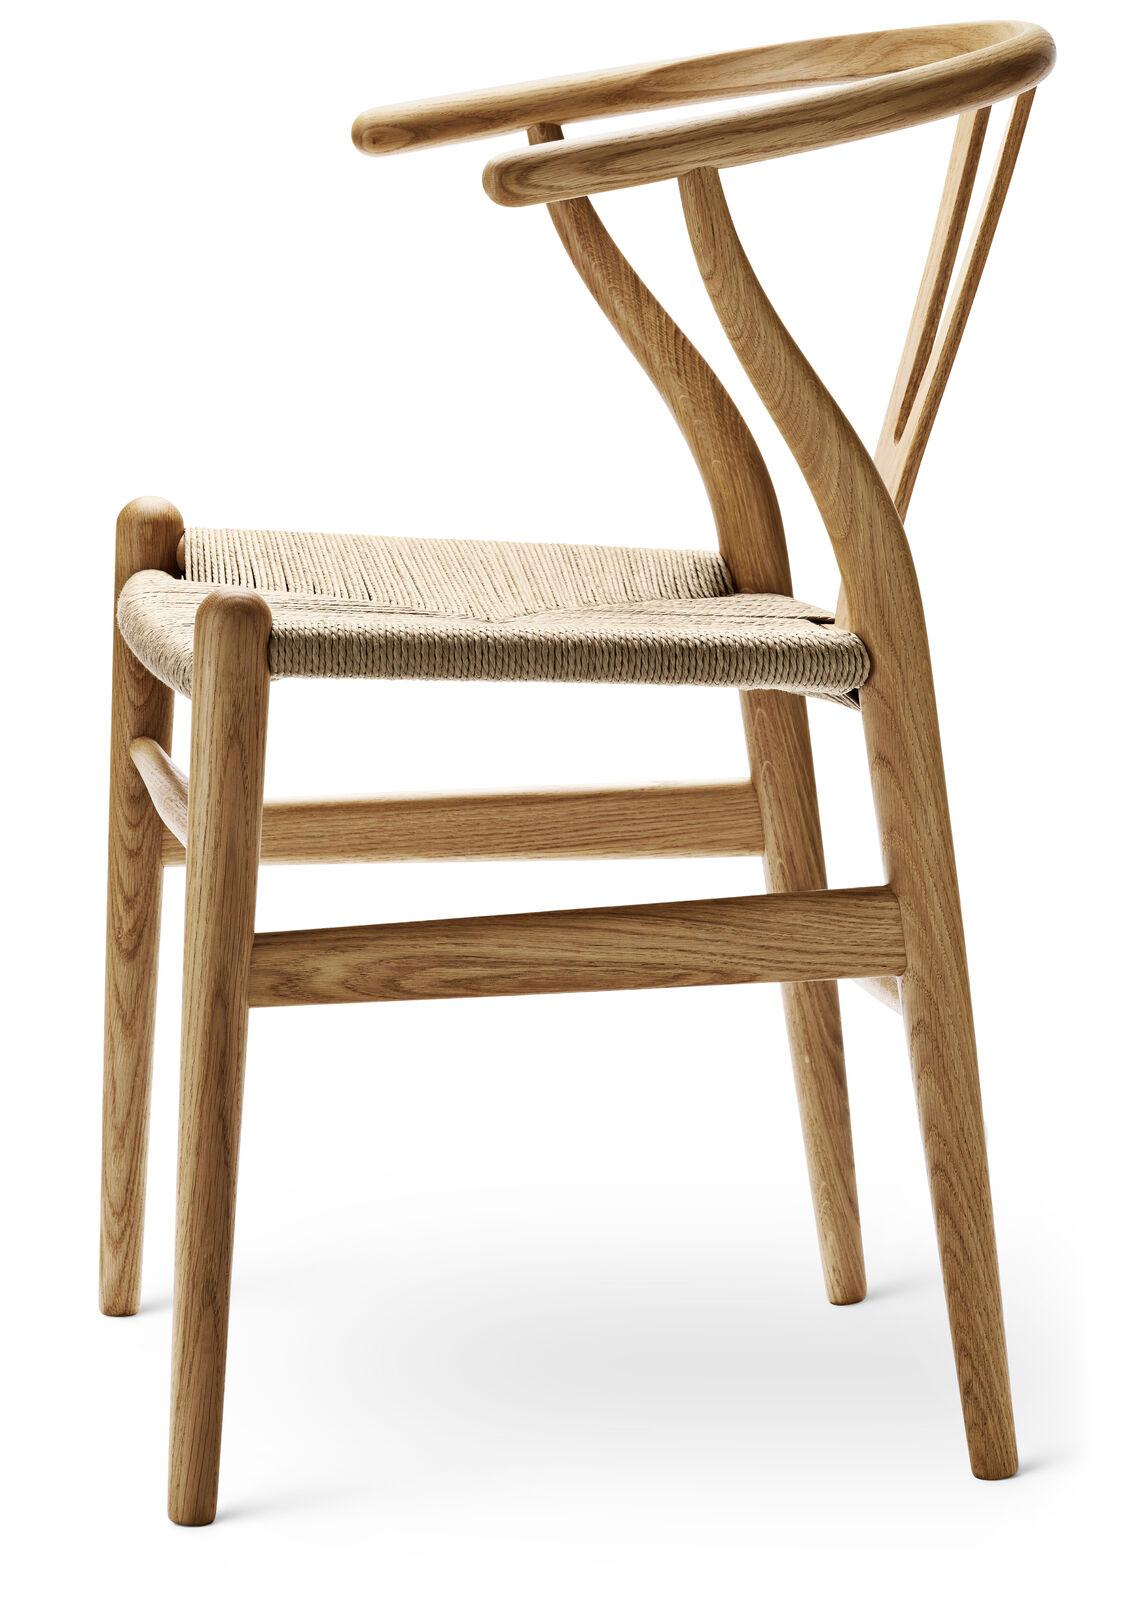 Le tout premier modèle que Hans J. Wegner a conçu exclusivement pour Carl Hansen & Søn en 1949, la CH24 ou chaise Wishbone, a été produit en continu depuis son introduction en 1950.